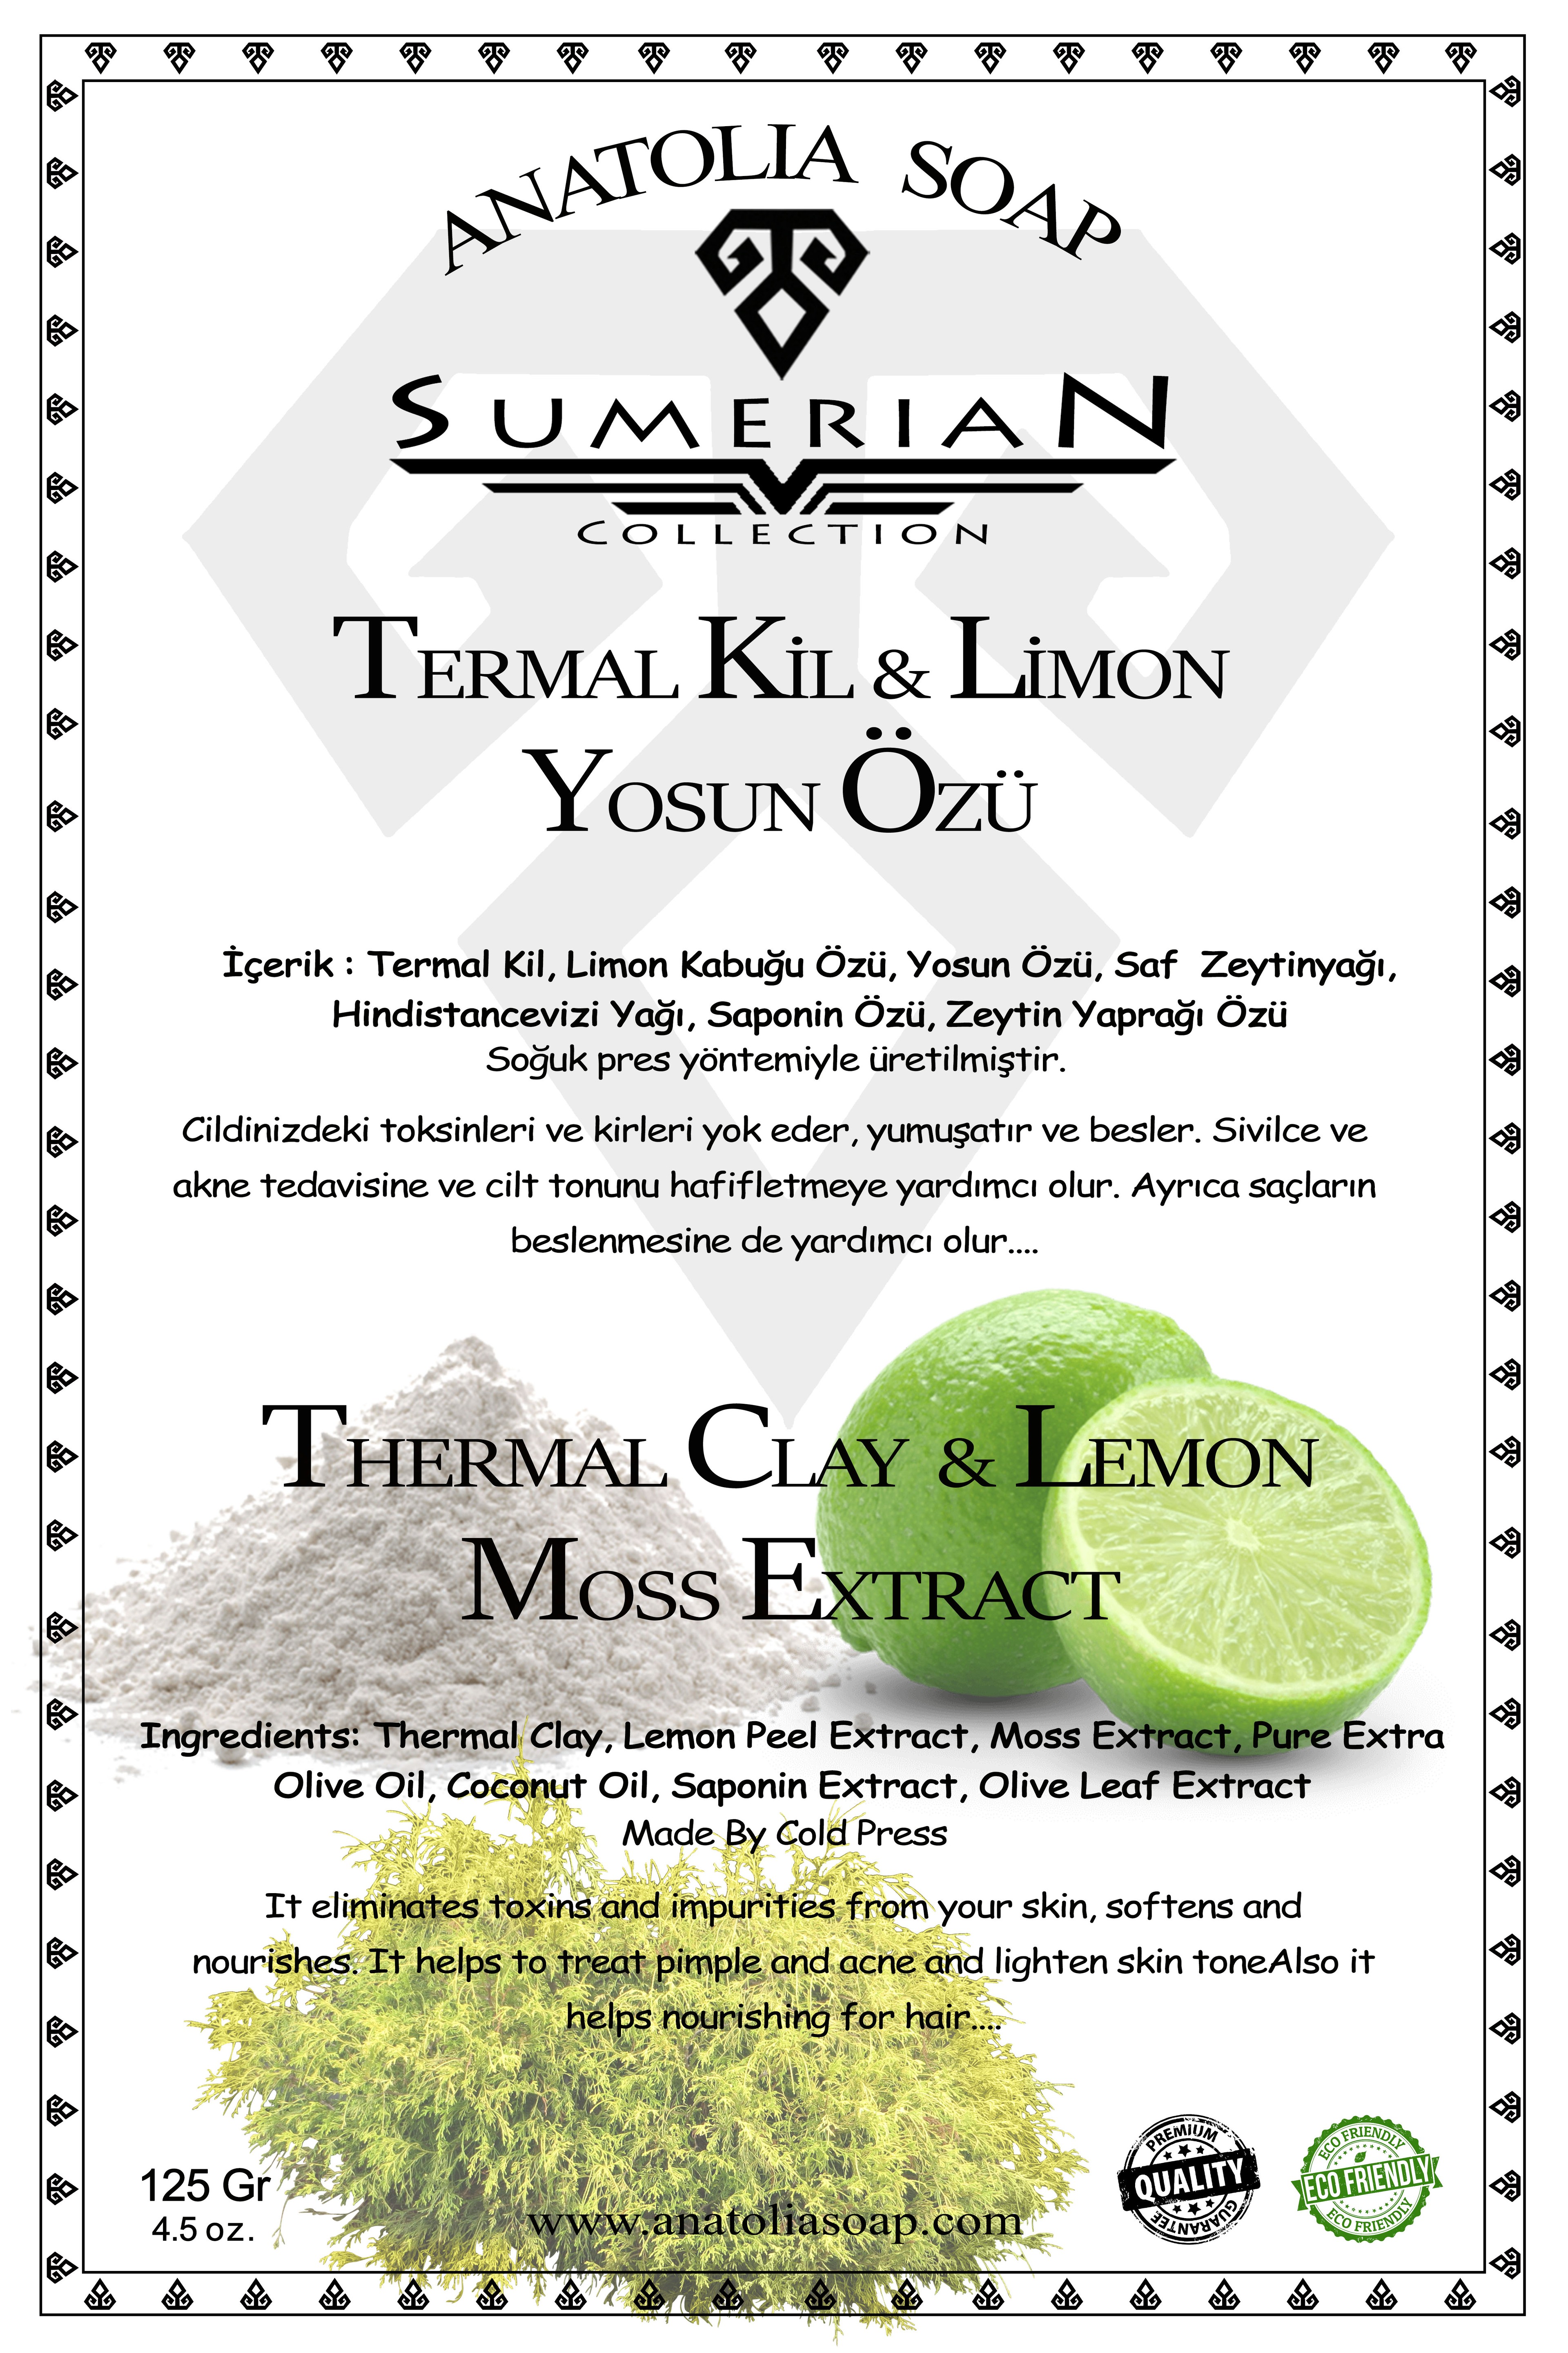 Sumerian Koleksiyonu Yosun Termal Kil Limon Sabunu ile Cildinize Doğal Maske Yapın.